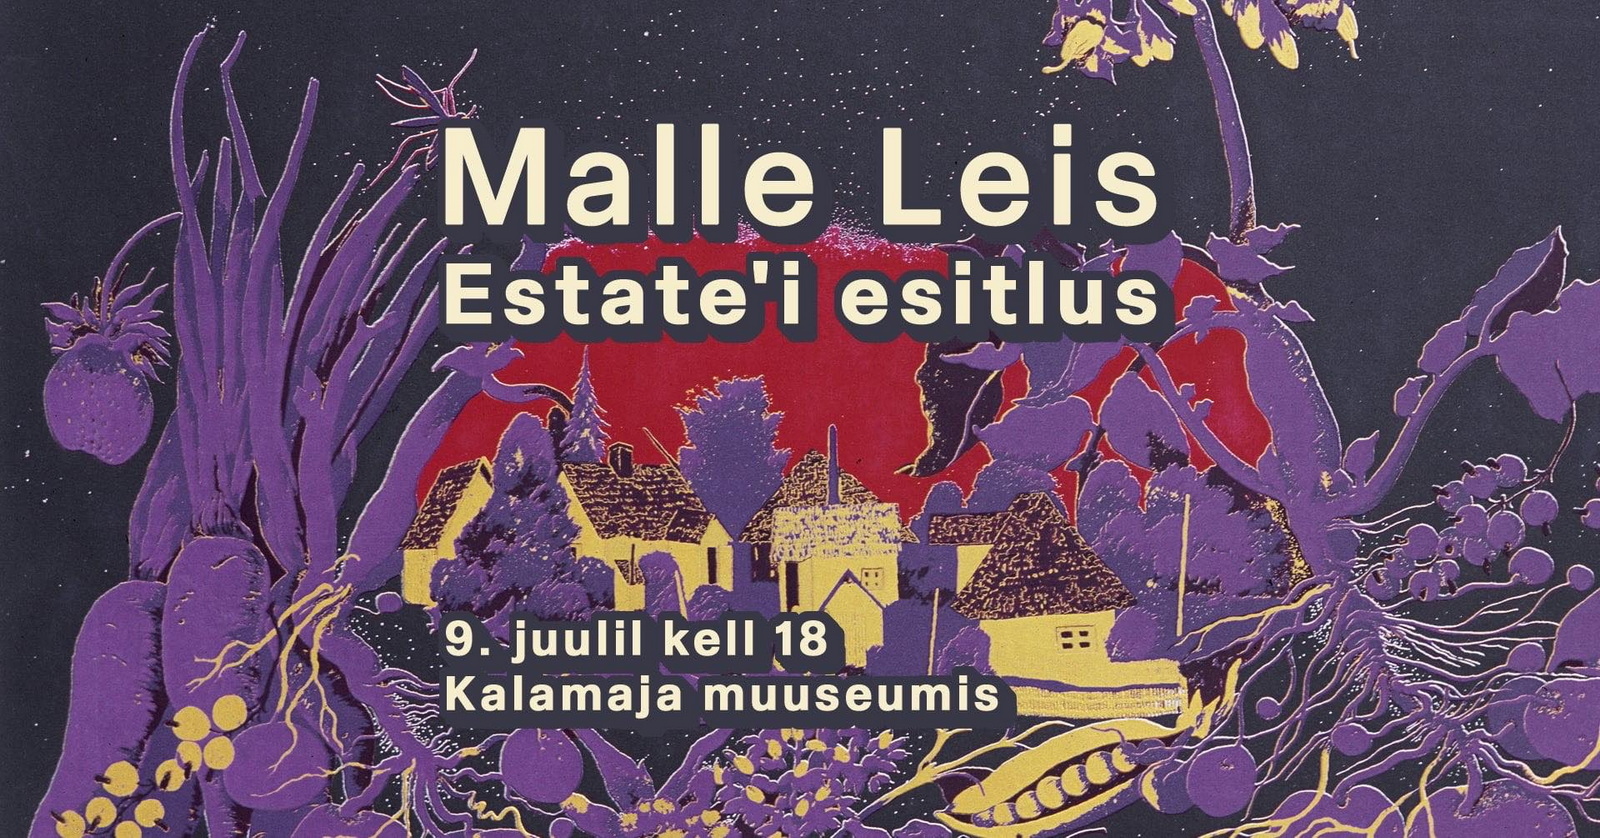 Презентация работ Малле Лейс в музее Каламая в Таллине (ФОТО)